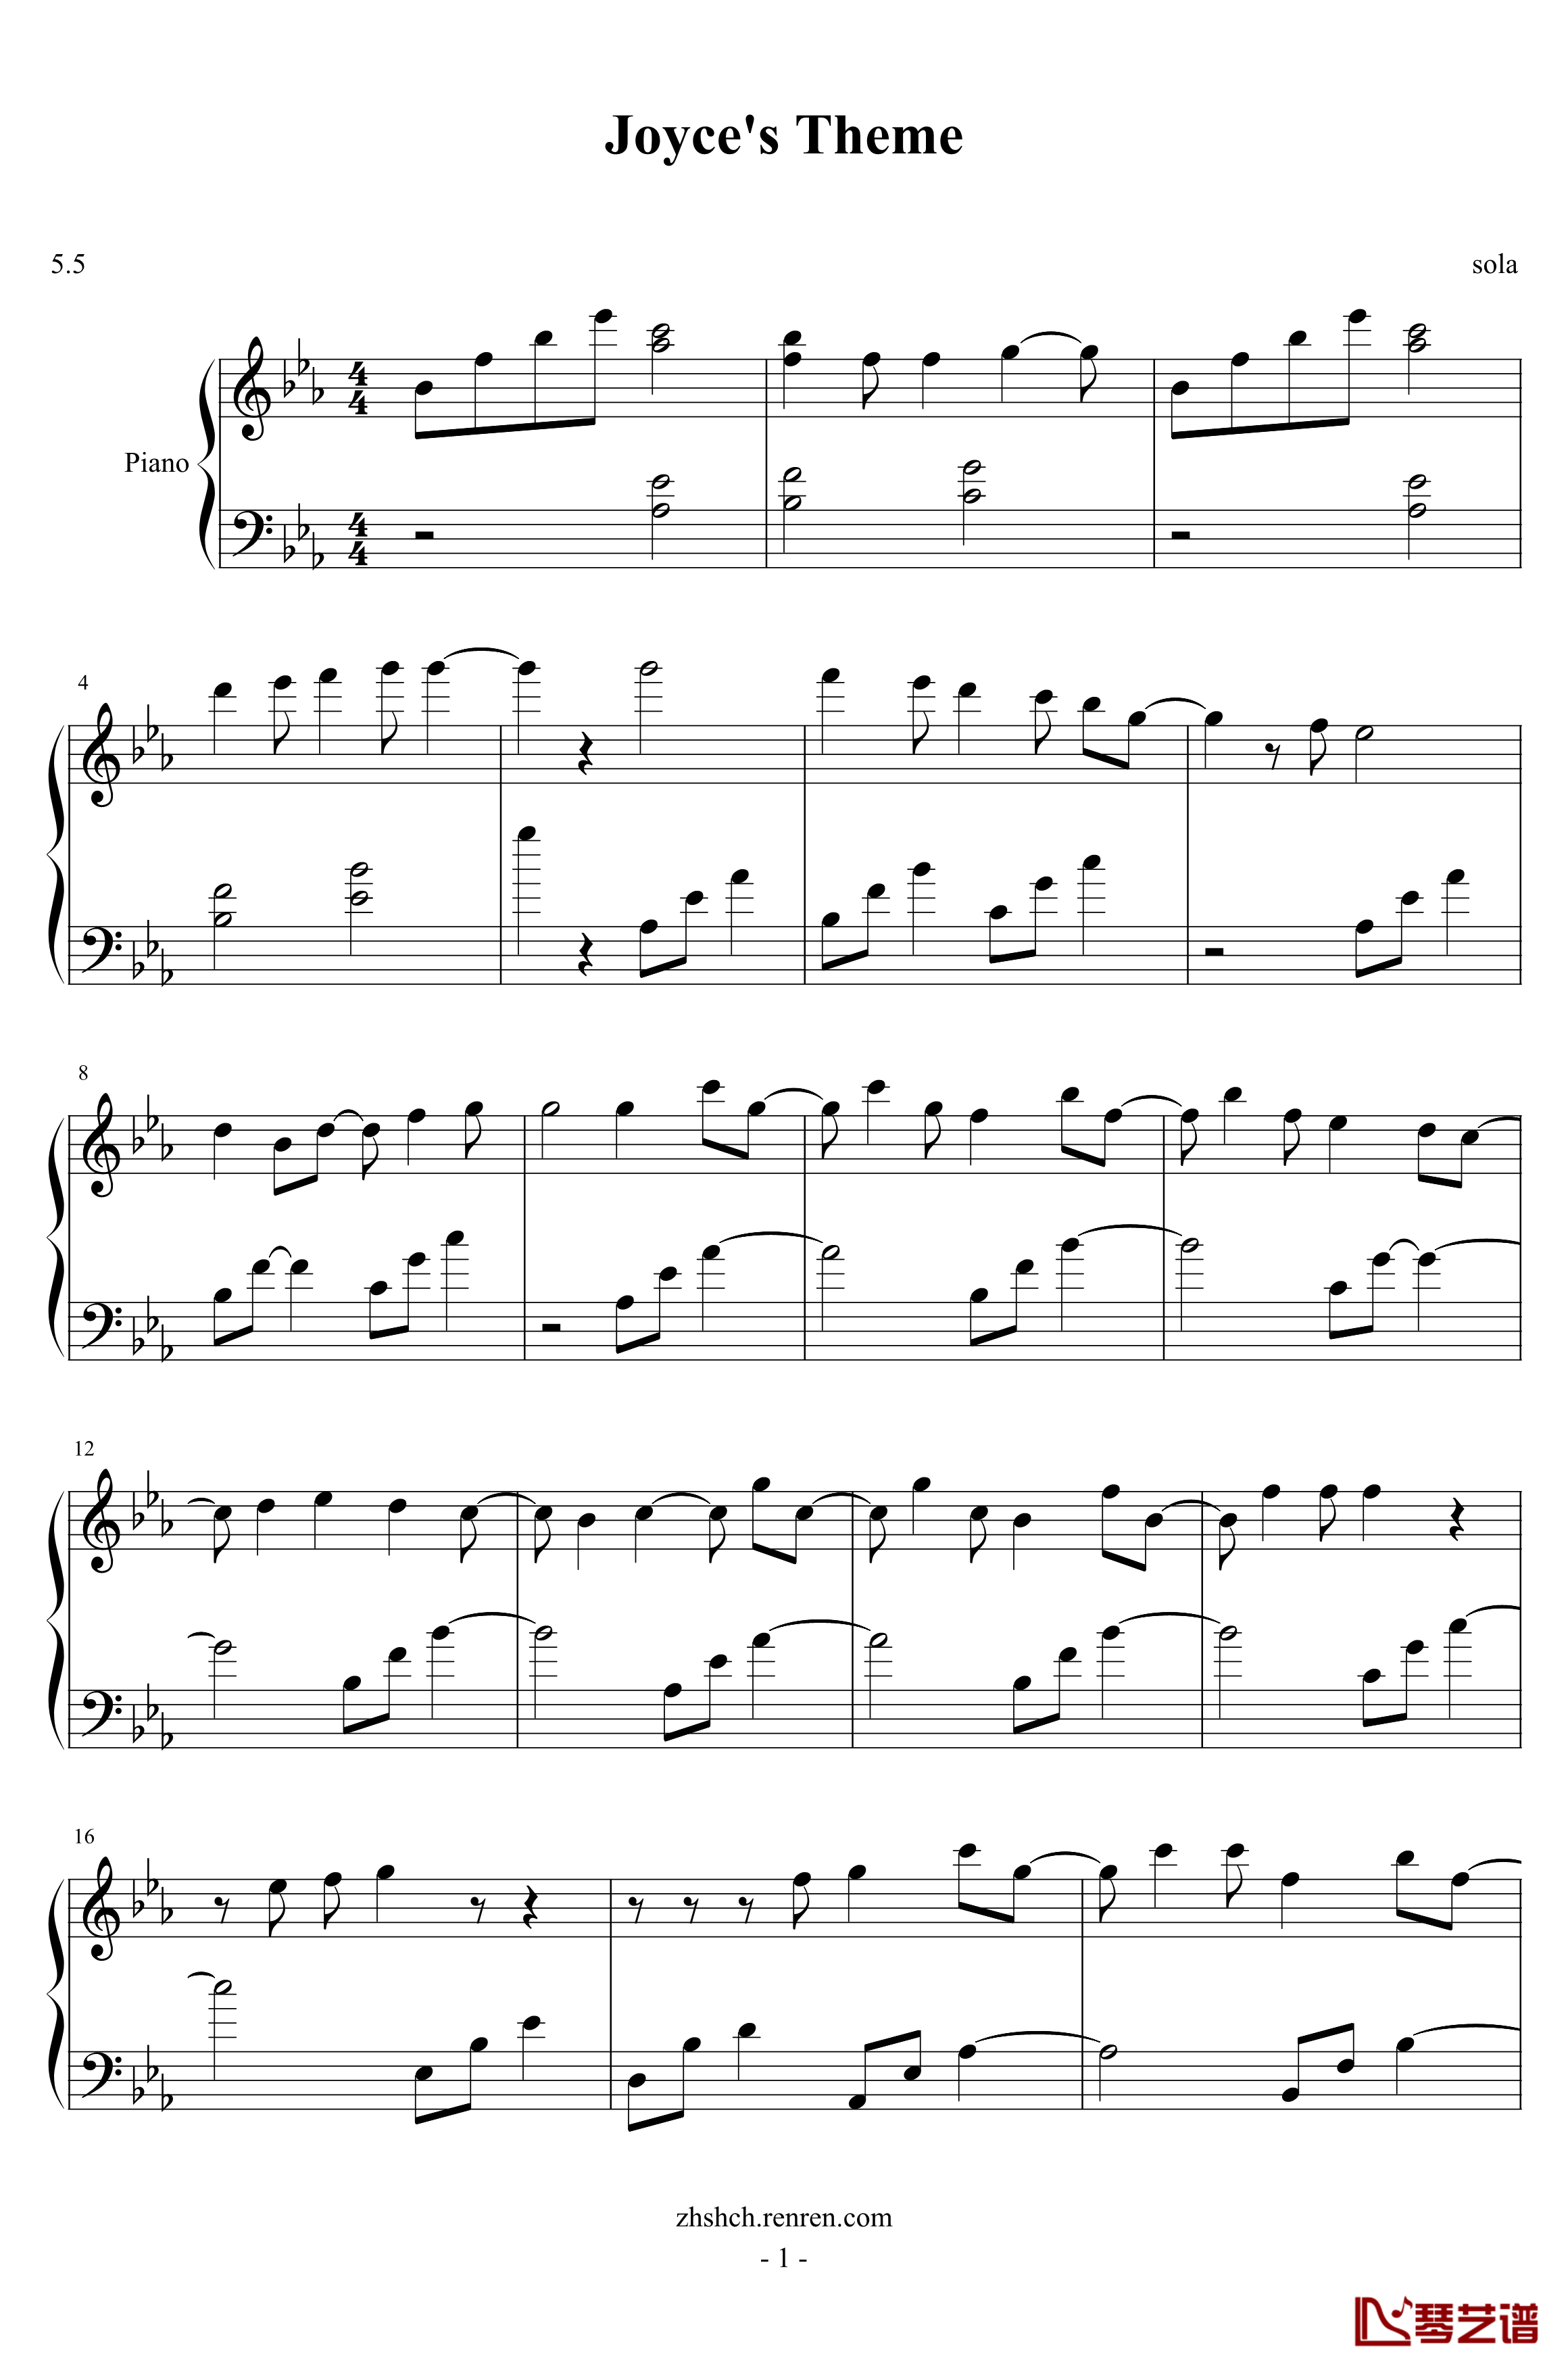 oyce's theme钢琴谱-richard5301